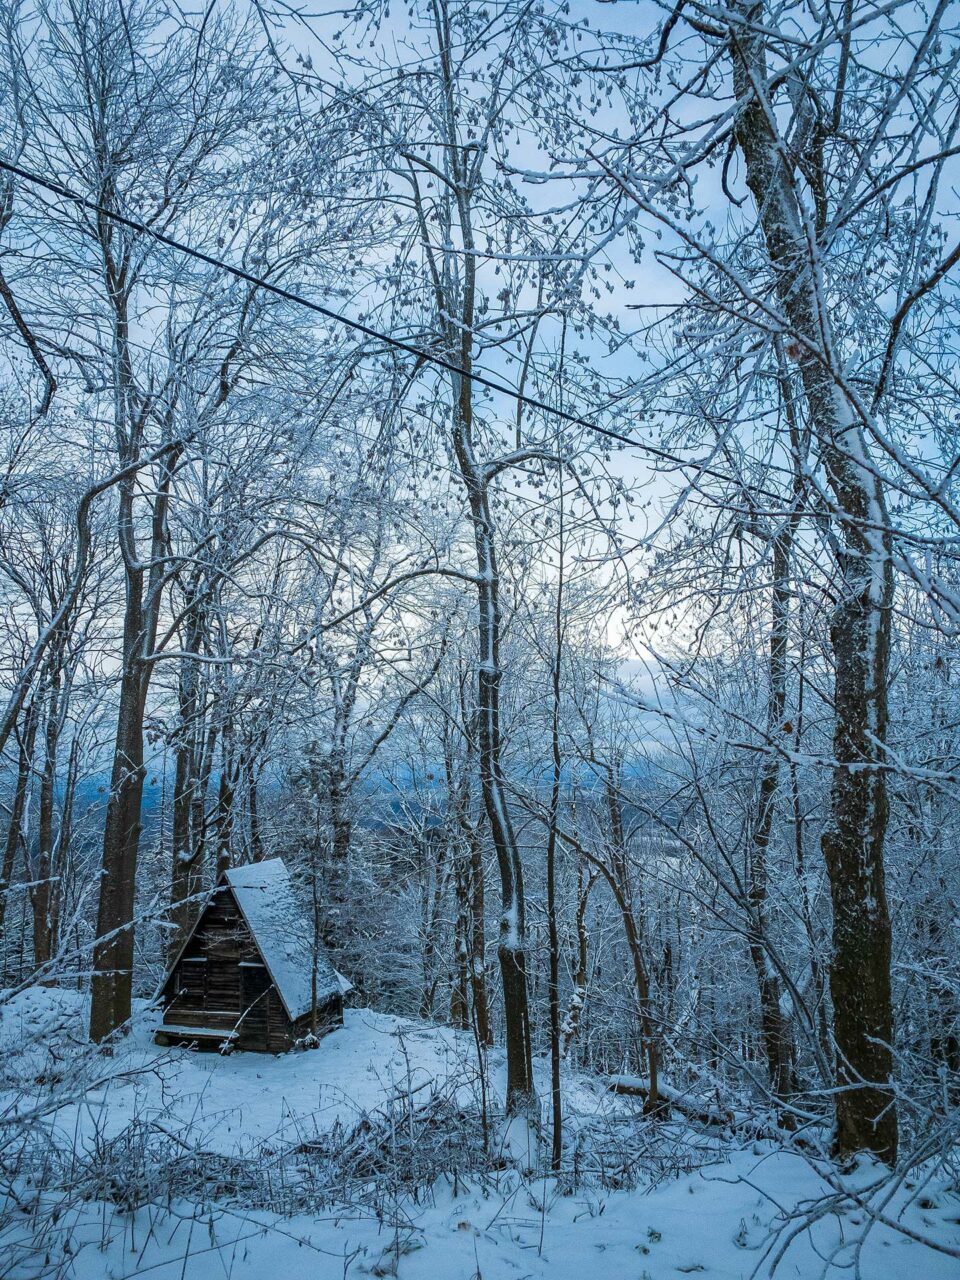 Blauweiß liegt der Wald, der Himmel, der Schnee. Winter am Geisingberg in der Nähe Altenbergs